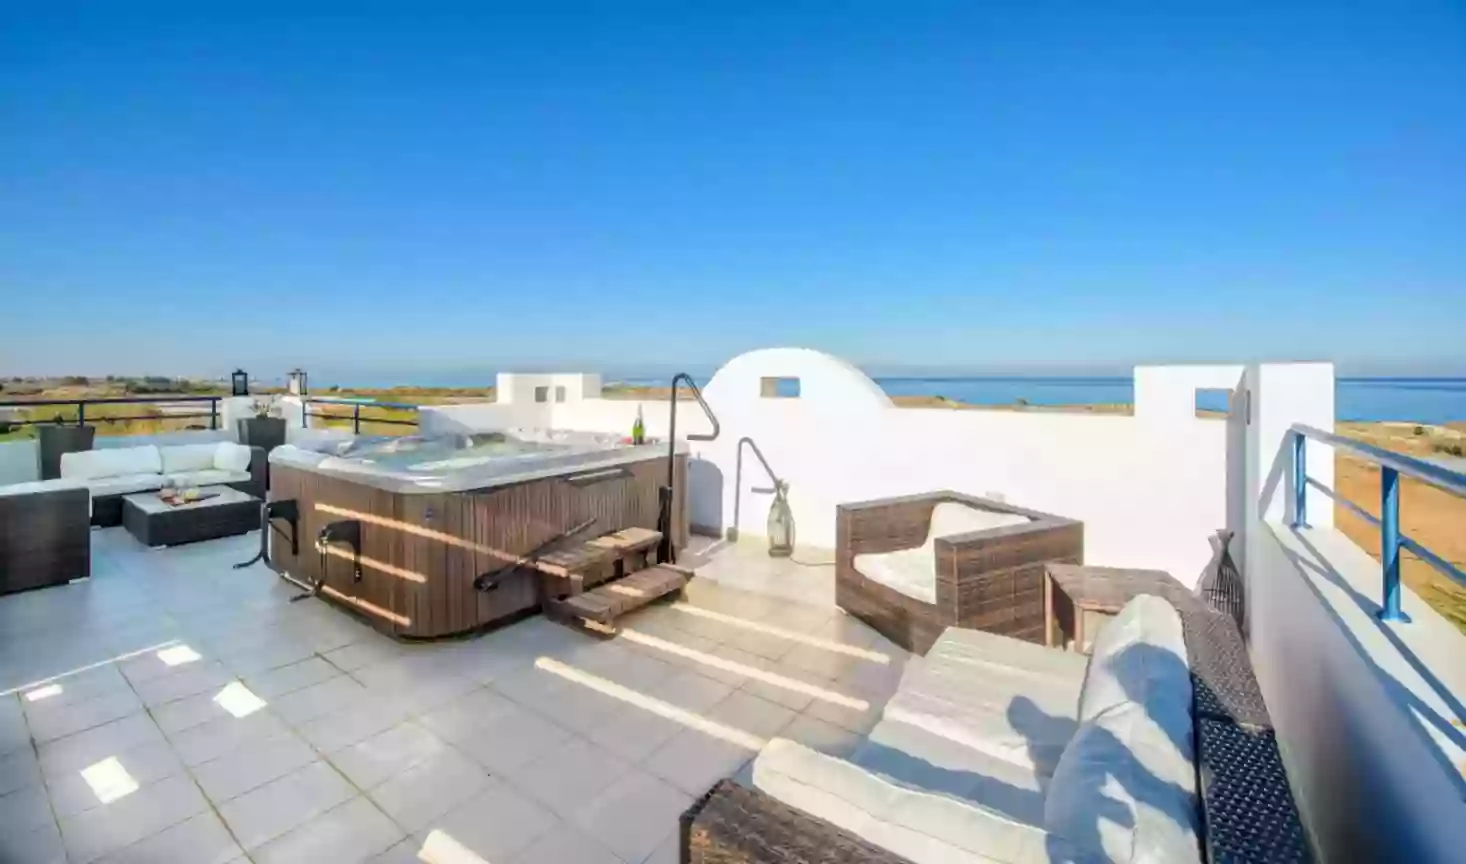 Sky, sea, sun! Stunning 4-bedroom villa in the suburbs of Cyprus